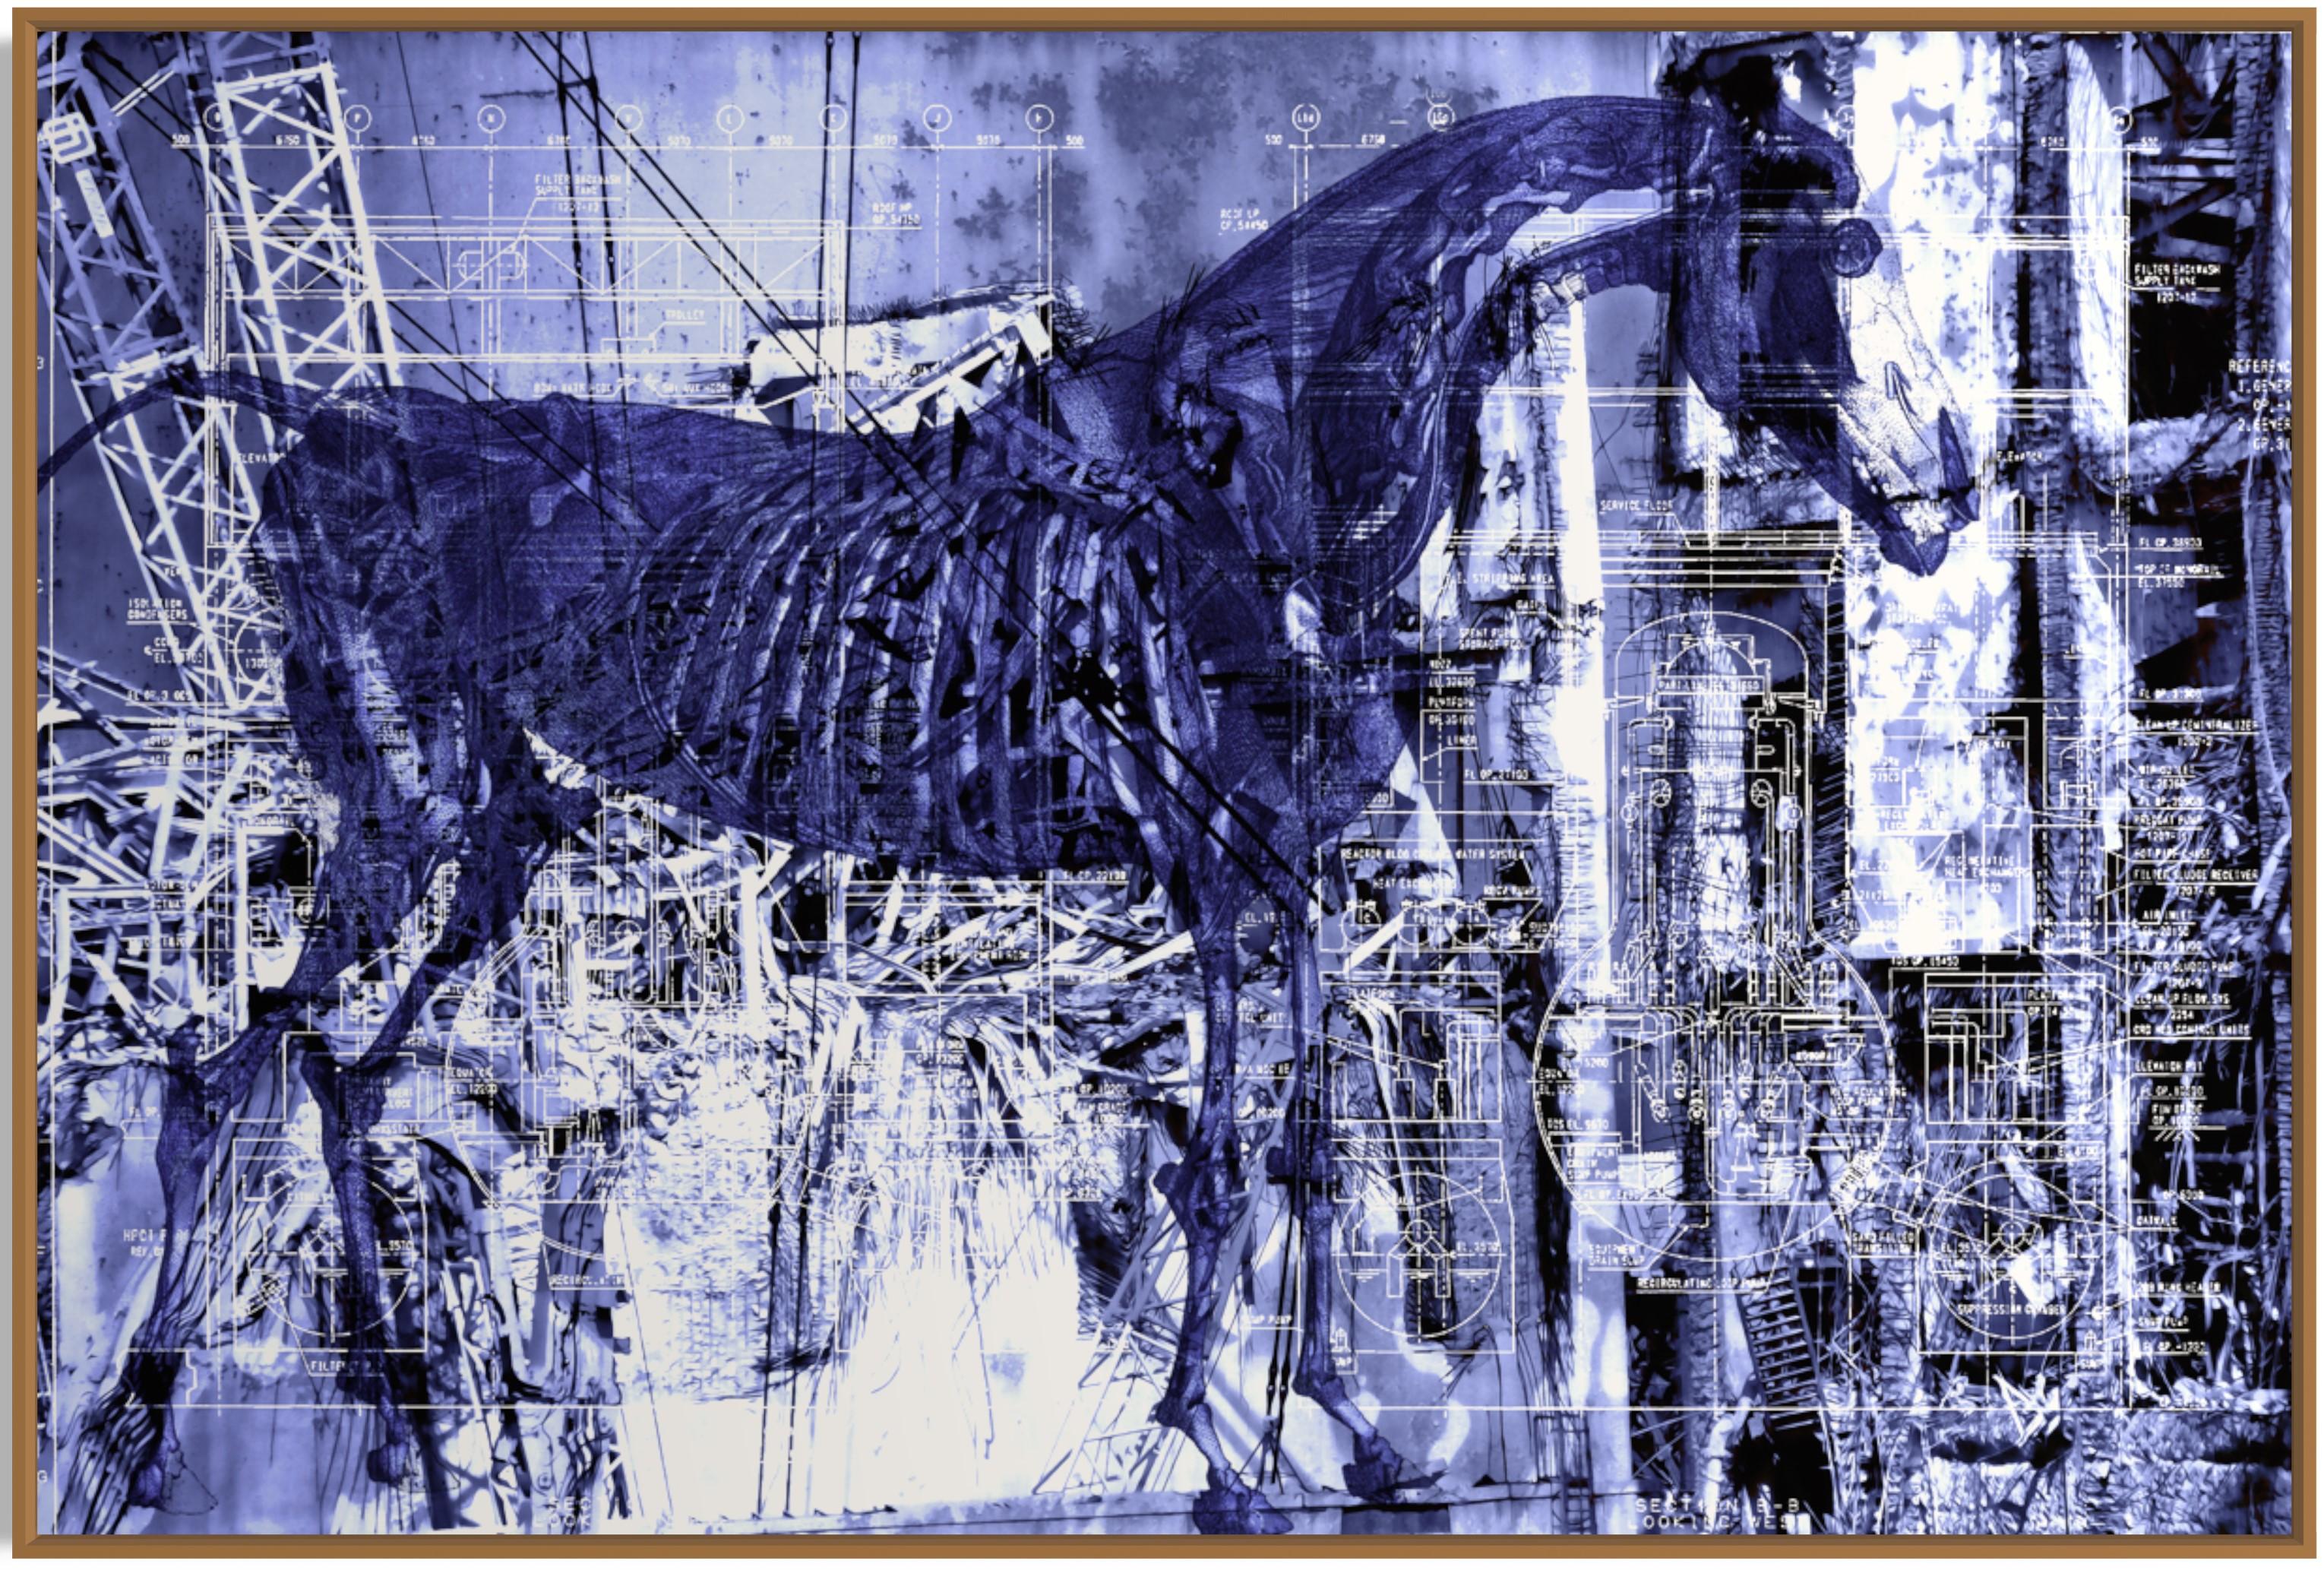 Thomas Bollinger Animal Art - 4th Horse At Fukushima